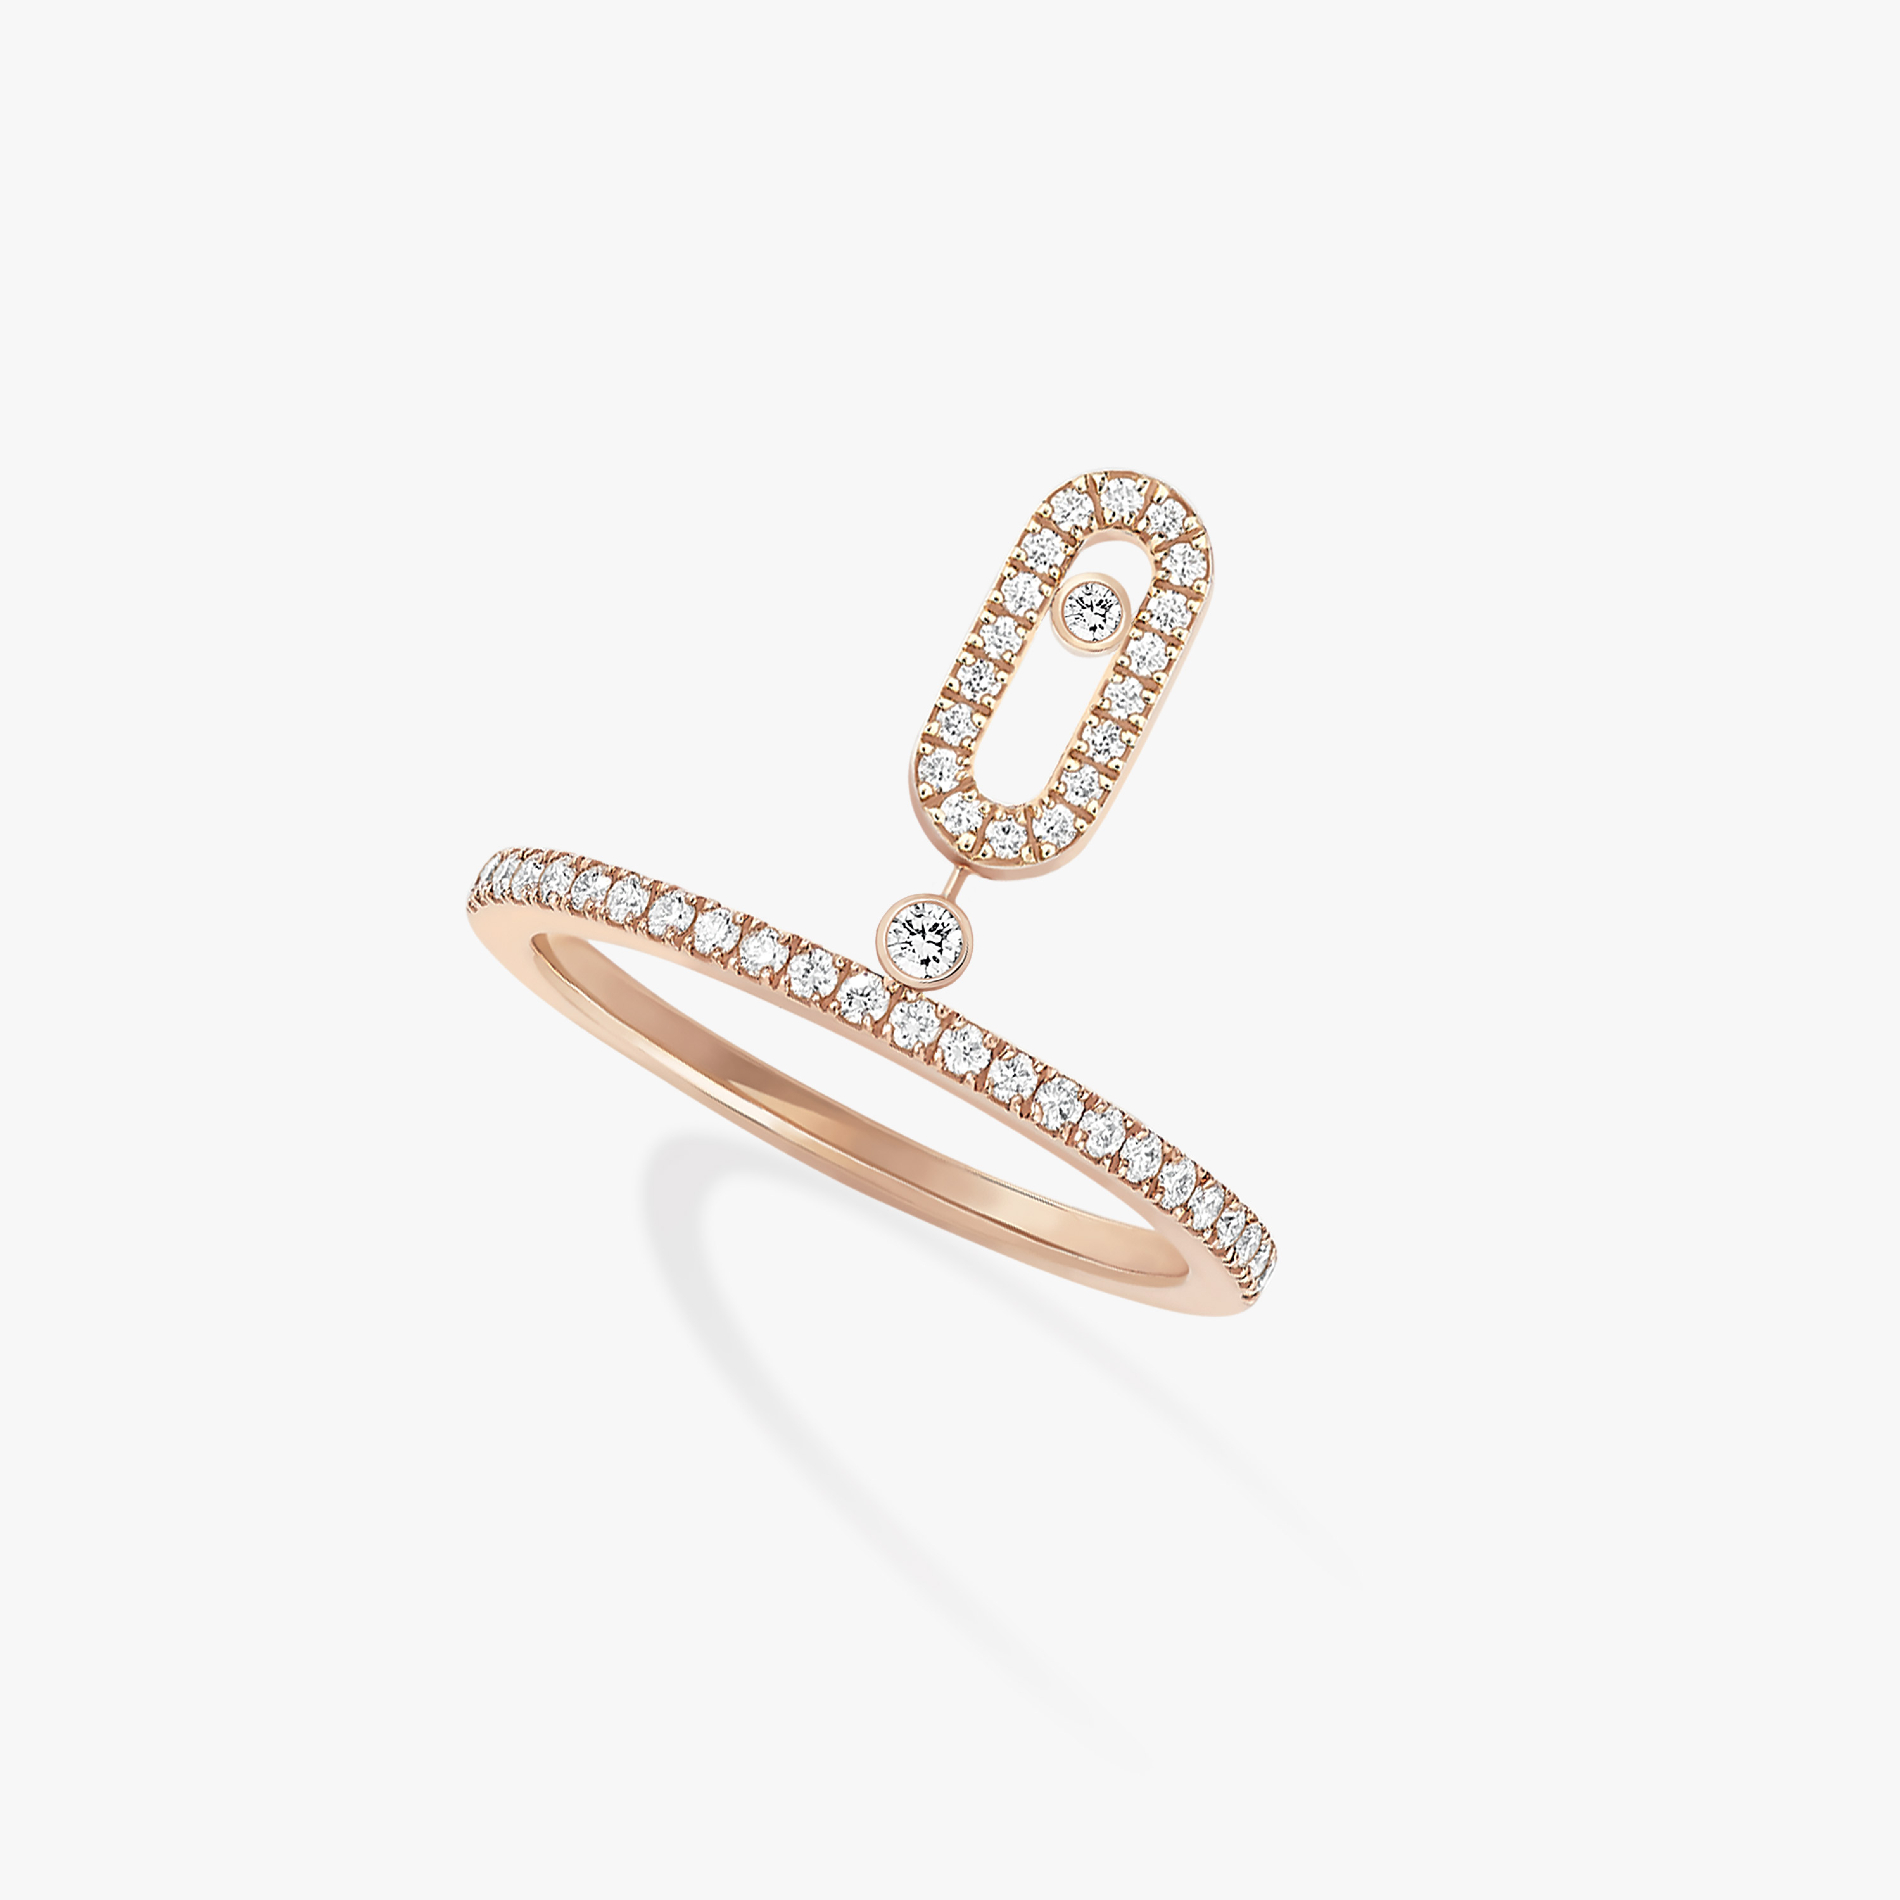 Кольцо Для нее Розовое золото Бриллиантами Move Uno с подвеской с бриллиантовым паве 11163-PG